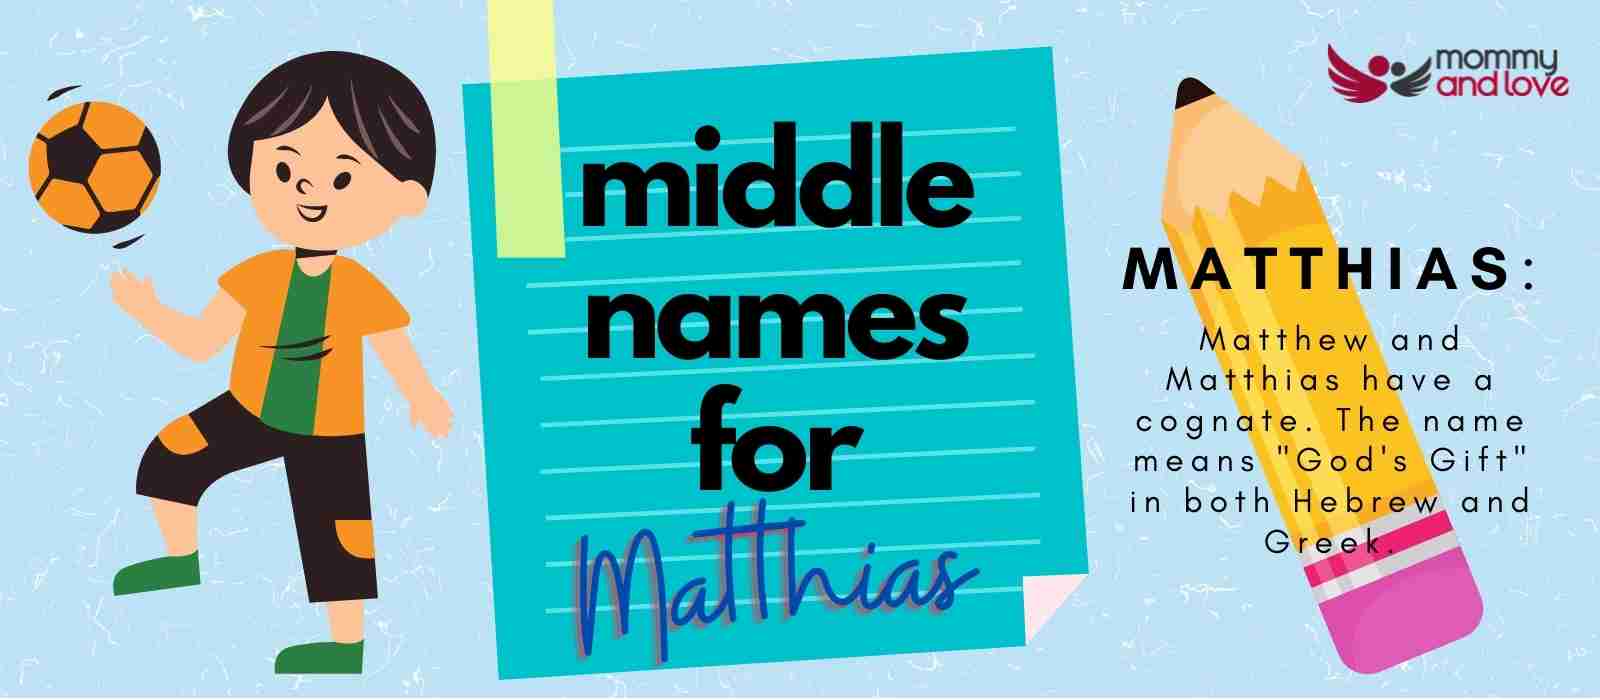 Middle Names for Matthias